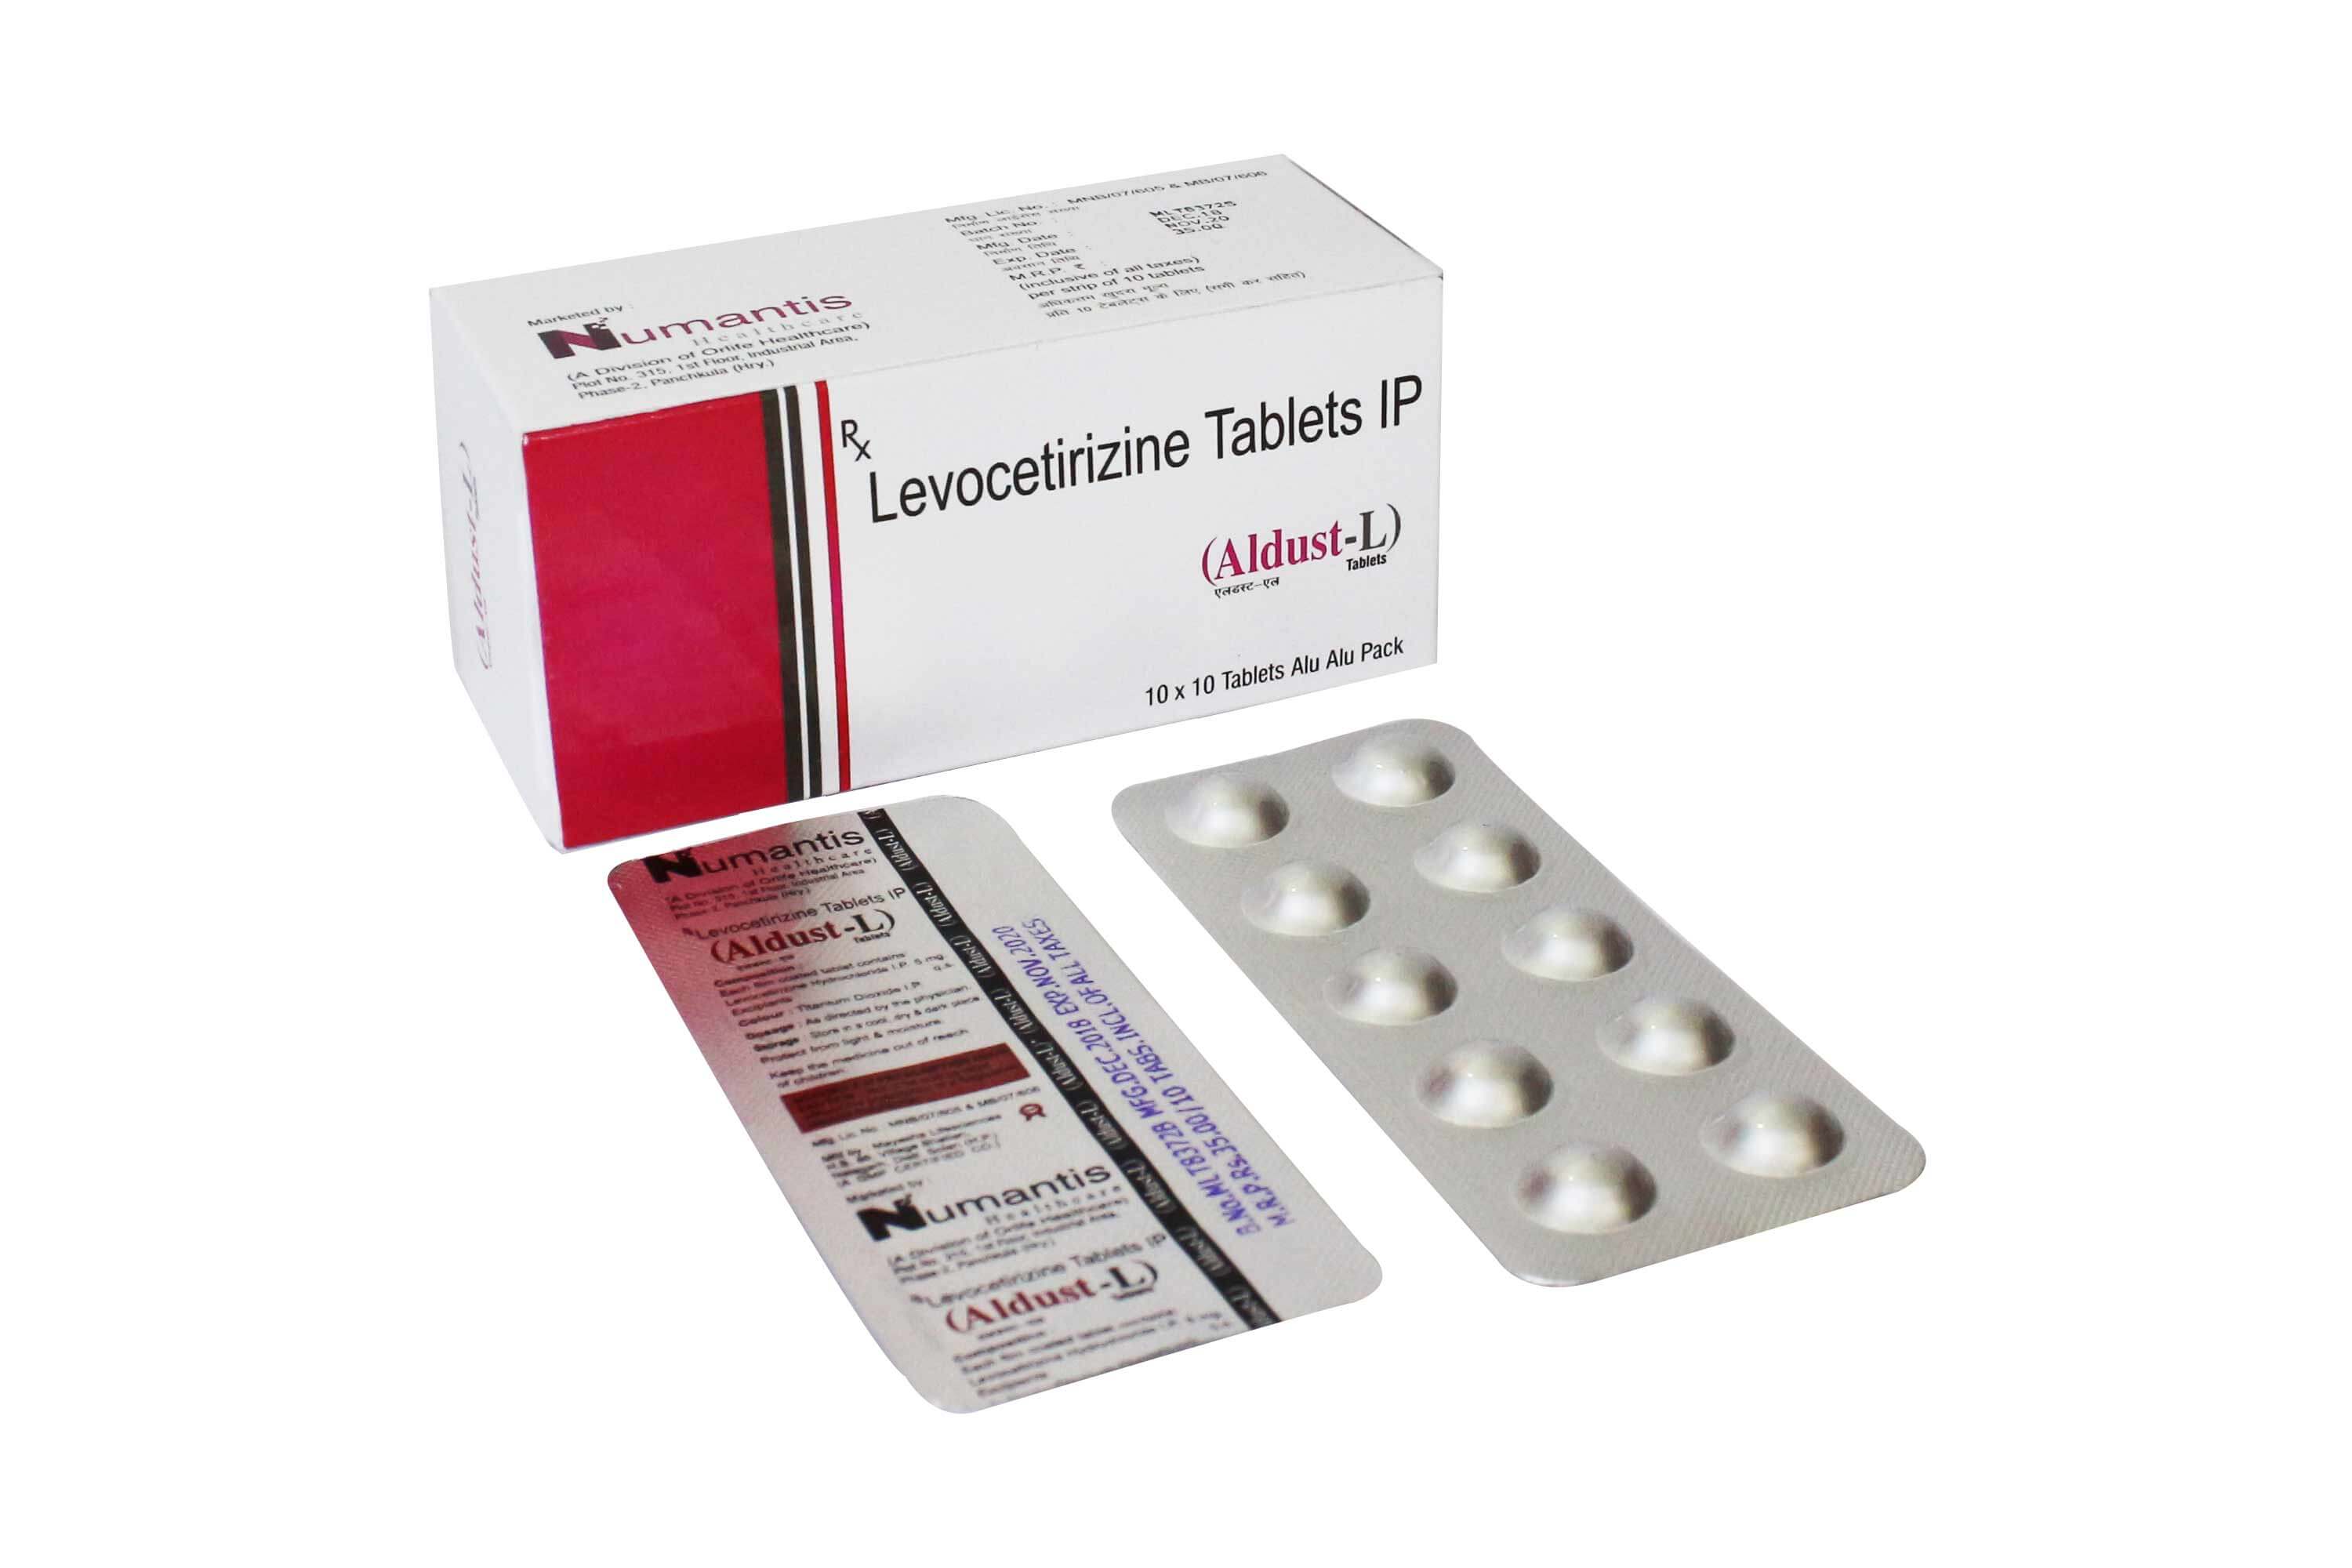 Product Name: Aldust L, Compositions of Aldust L are Levocetrizine Talets IP - Numantis Healthcare